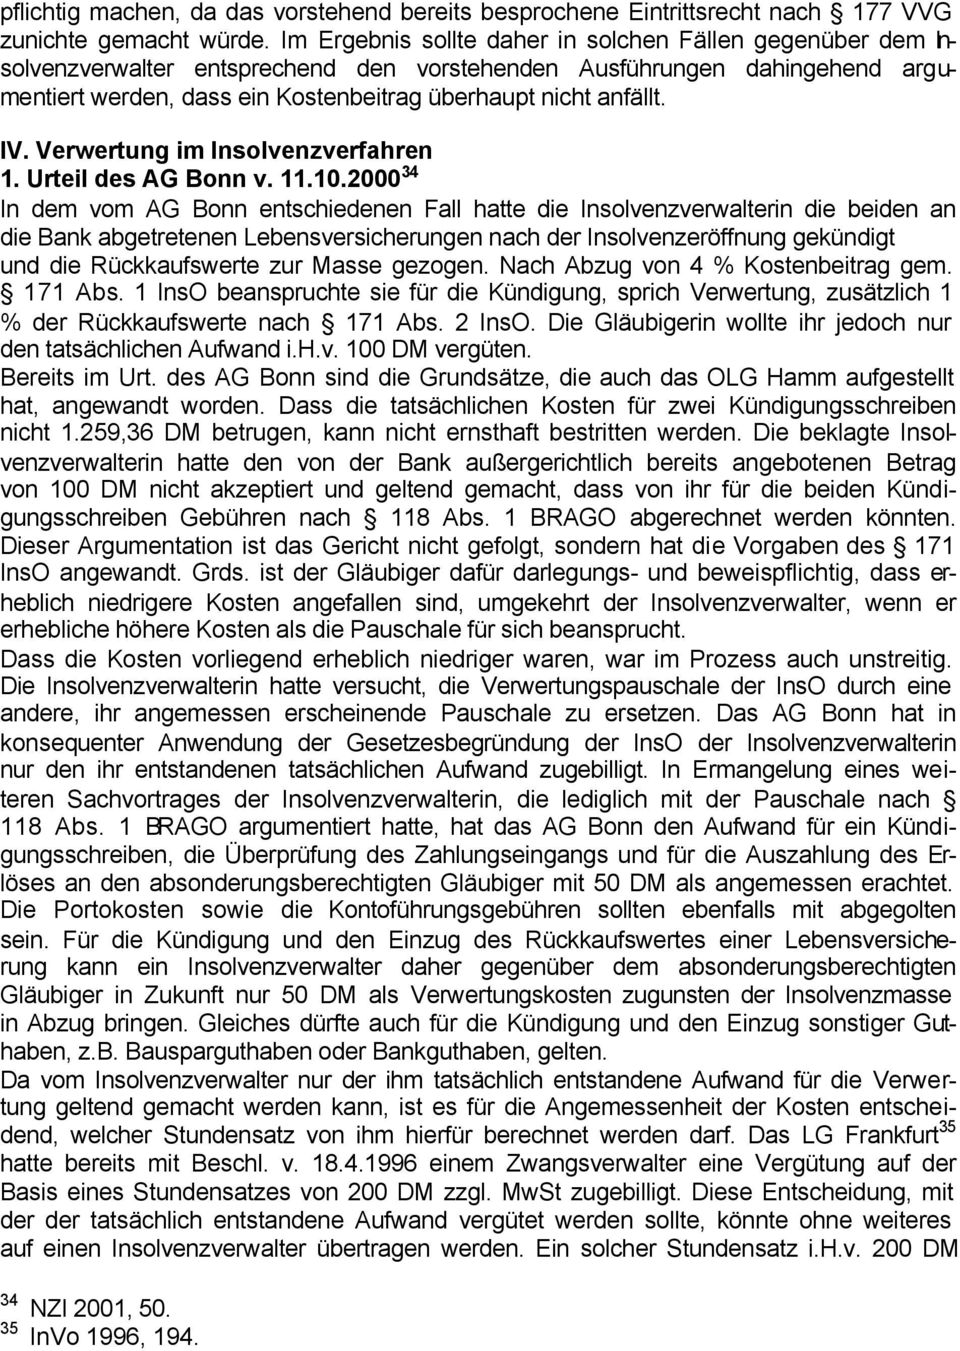 IV. Verwertung im Insolvenzverfahren 1. Urteil des AG Bonn v. 11.10.